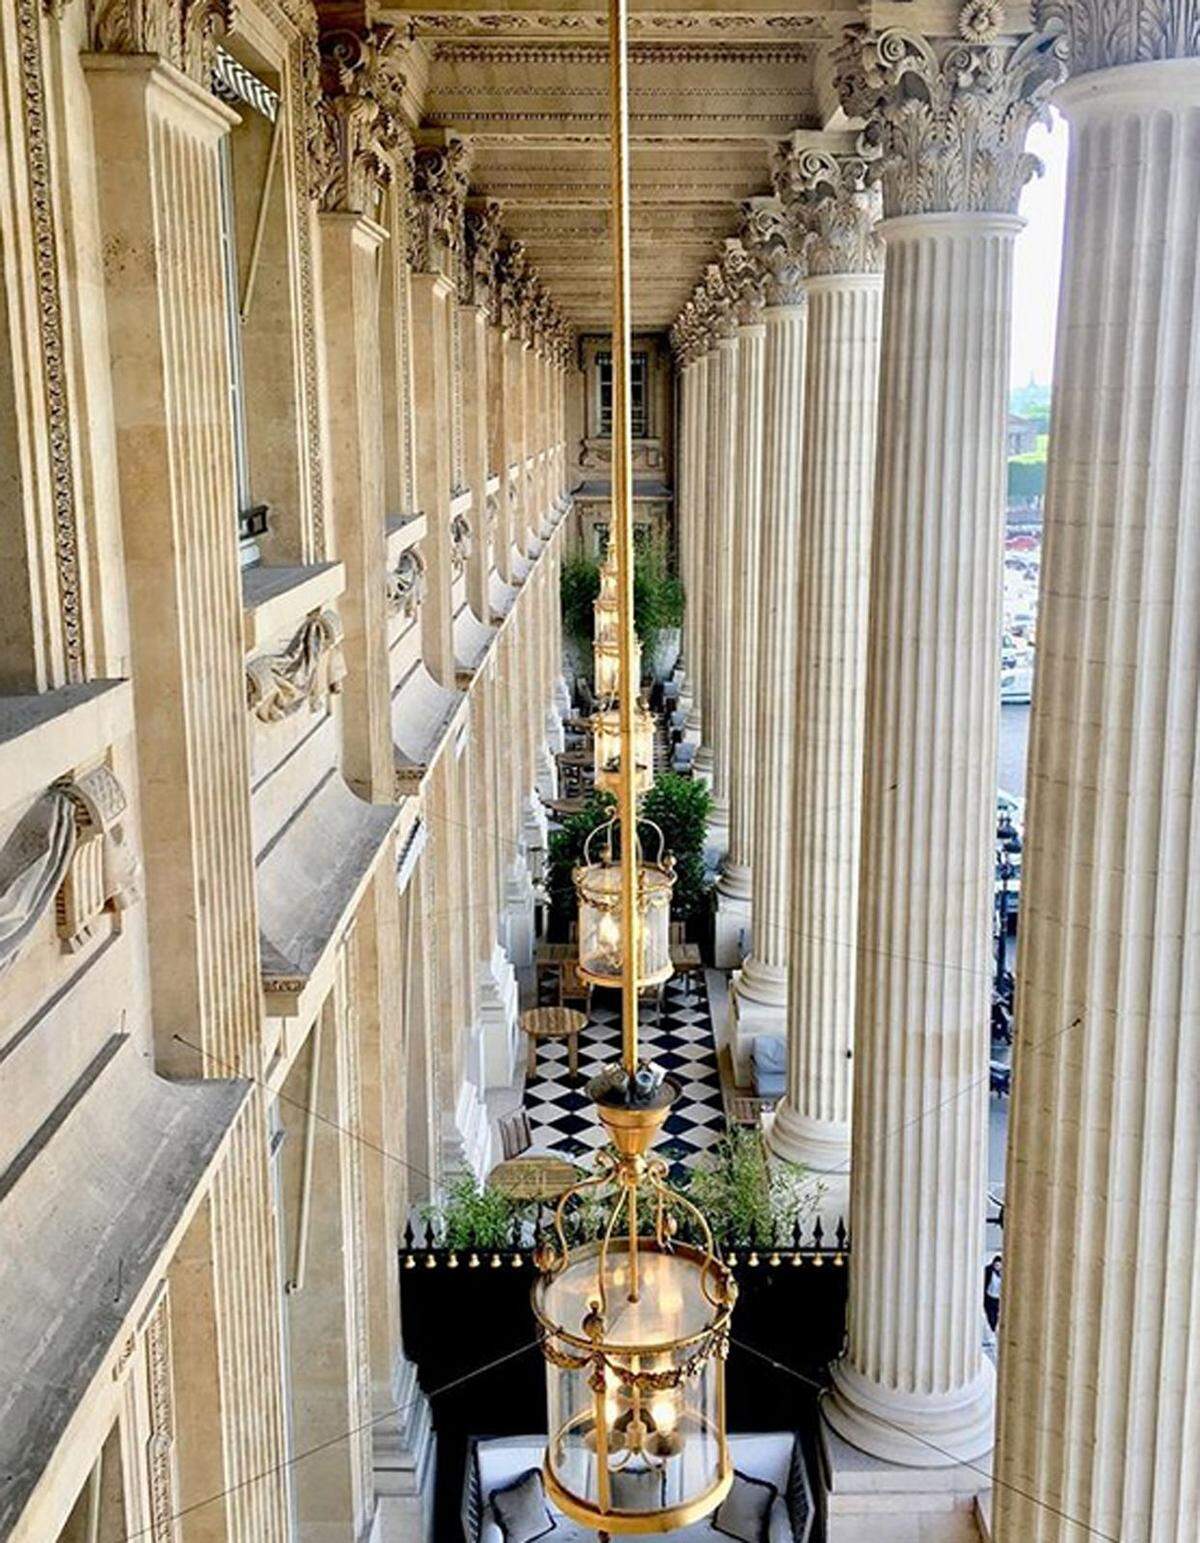 Hôtel de Crillon, Paris, Frankreich Es gibt wenige Hotels, die mehr Geschichte haben als das altehrwürdige Hôtel de Crillon in Paris. König Louis XV hat es in Auftrag gegeben, hier hatte Marie Antoinette einst Klavierunterricht. Nach einer vierjährigen Renovierungsphase eröffnete es im Junli 2017 mit "neuen" Annehmlichkeiten wie Klimaanlagen.